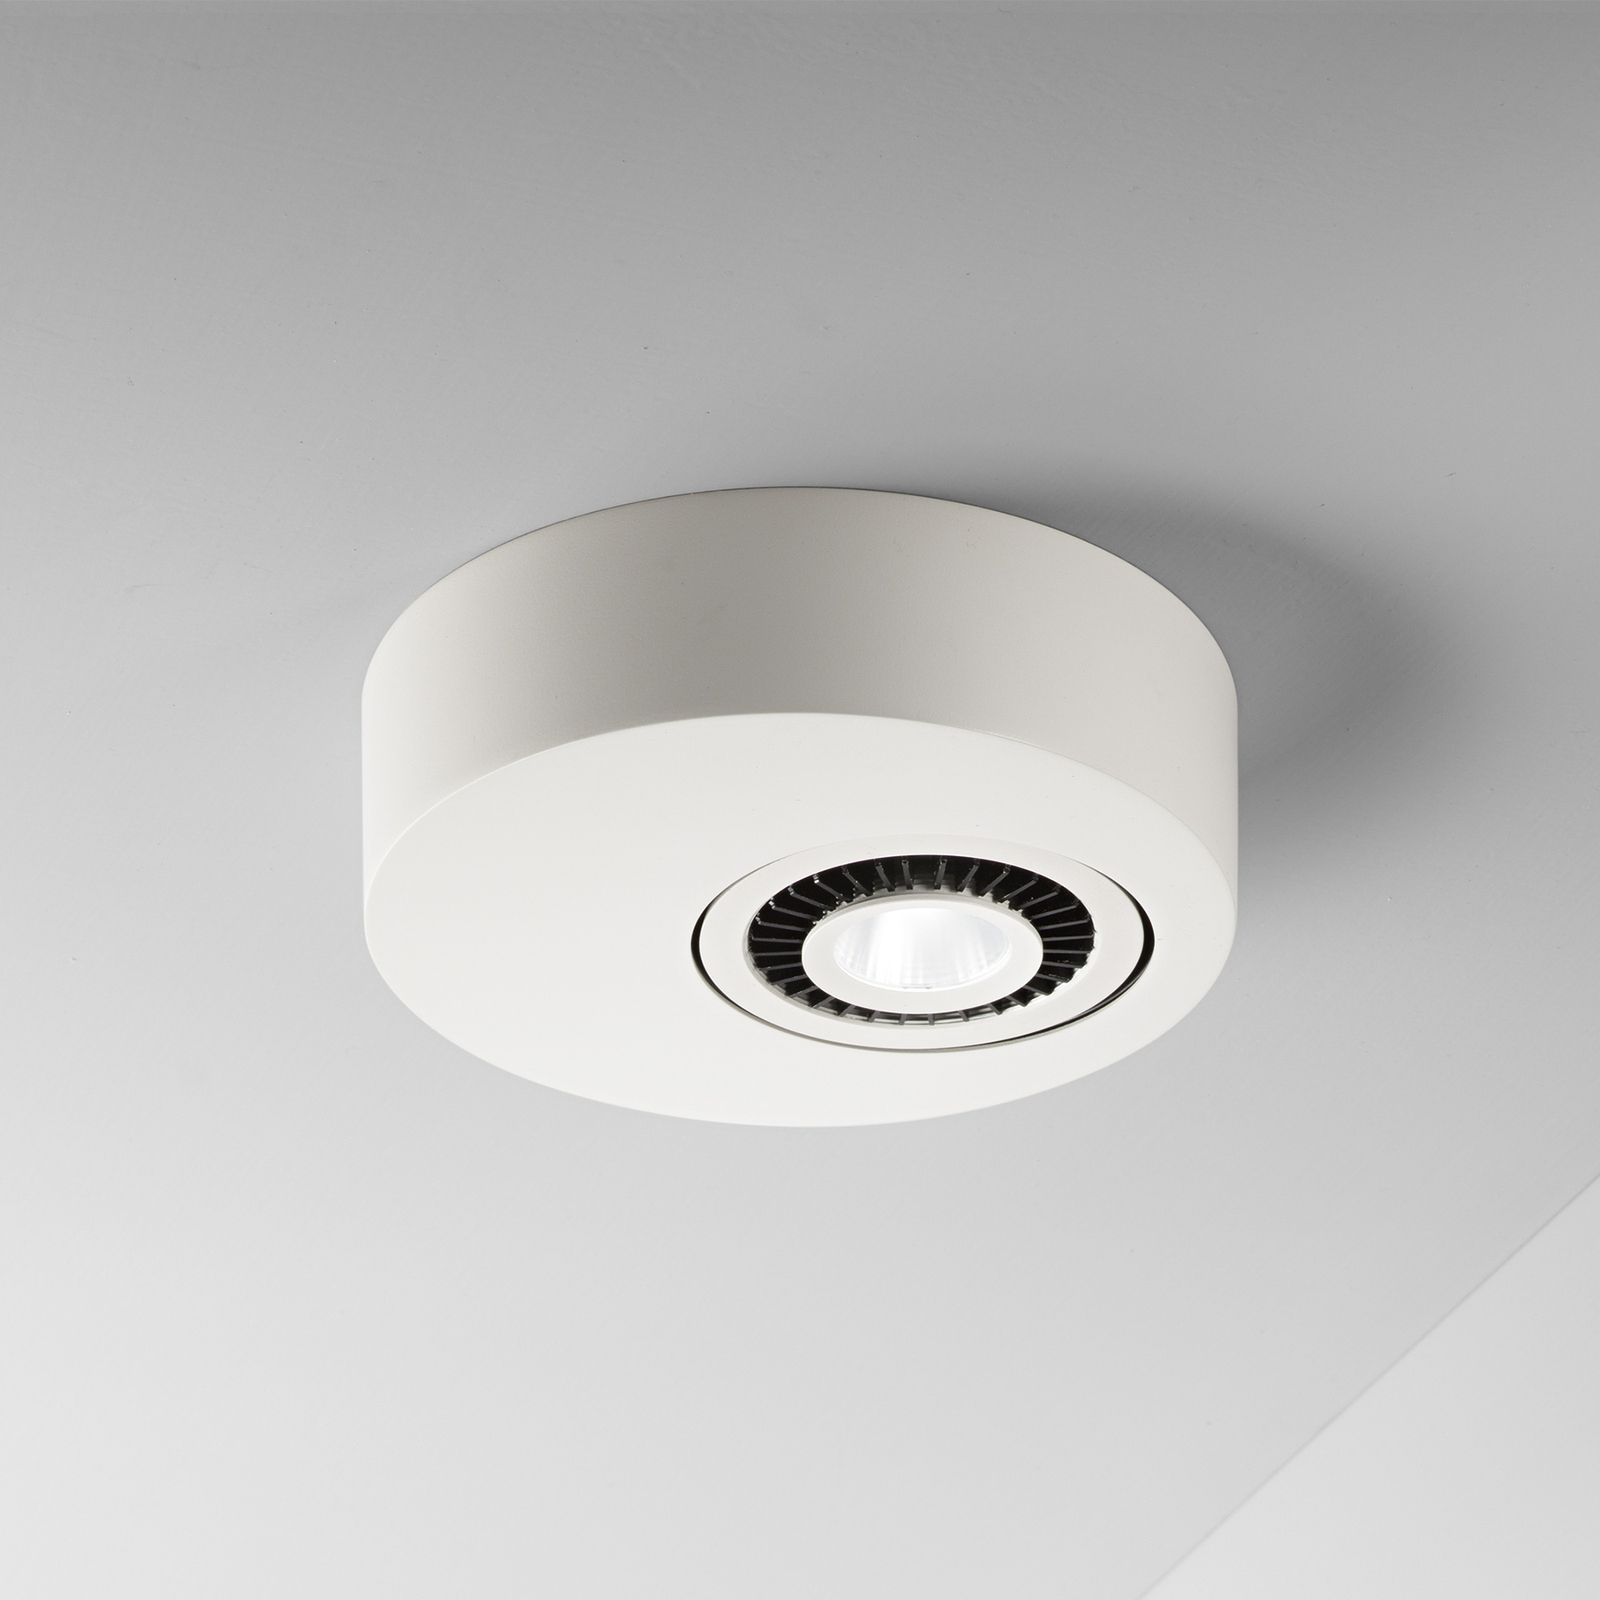 Egger Geo LED ceiling light with LED spot, white